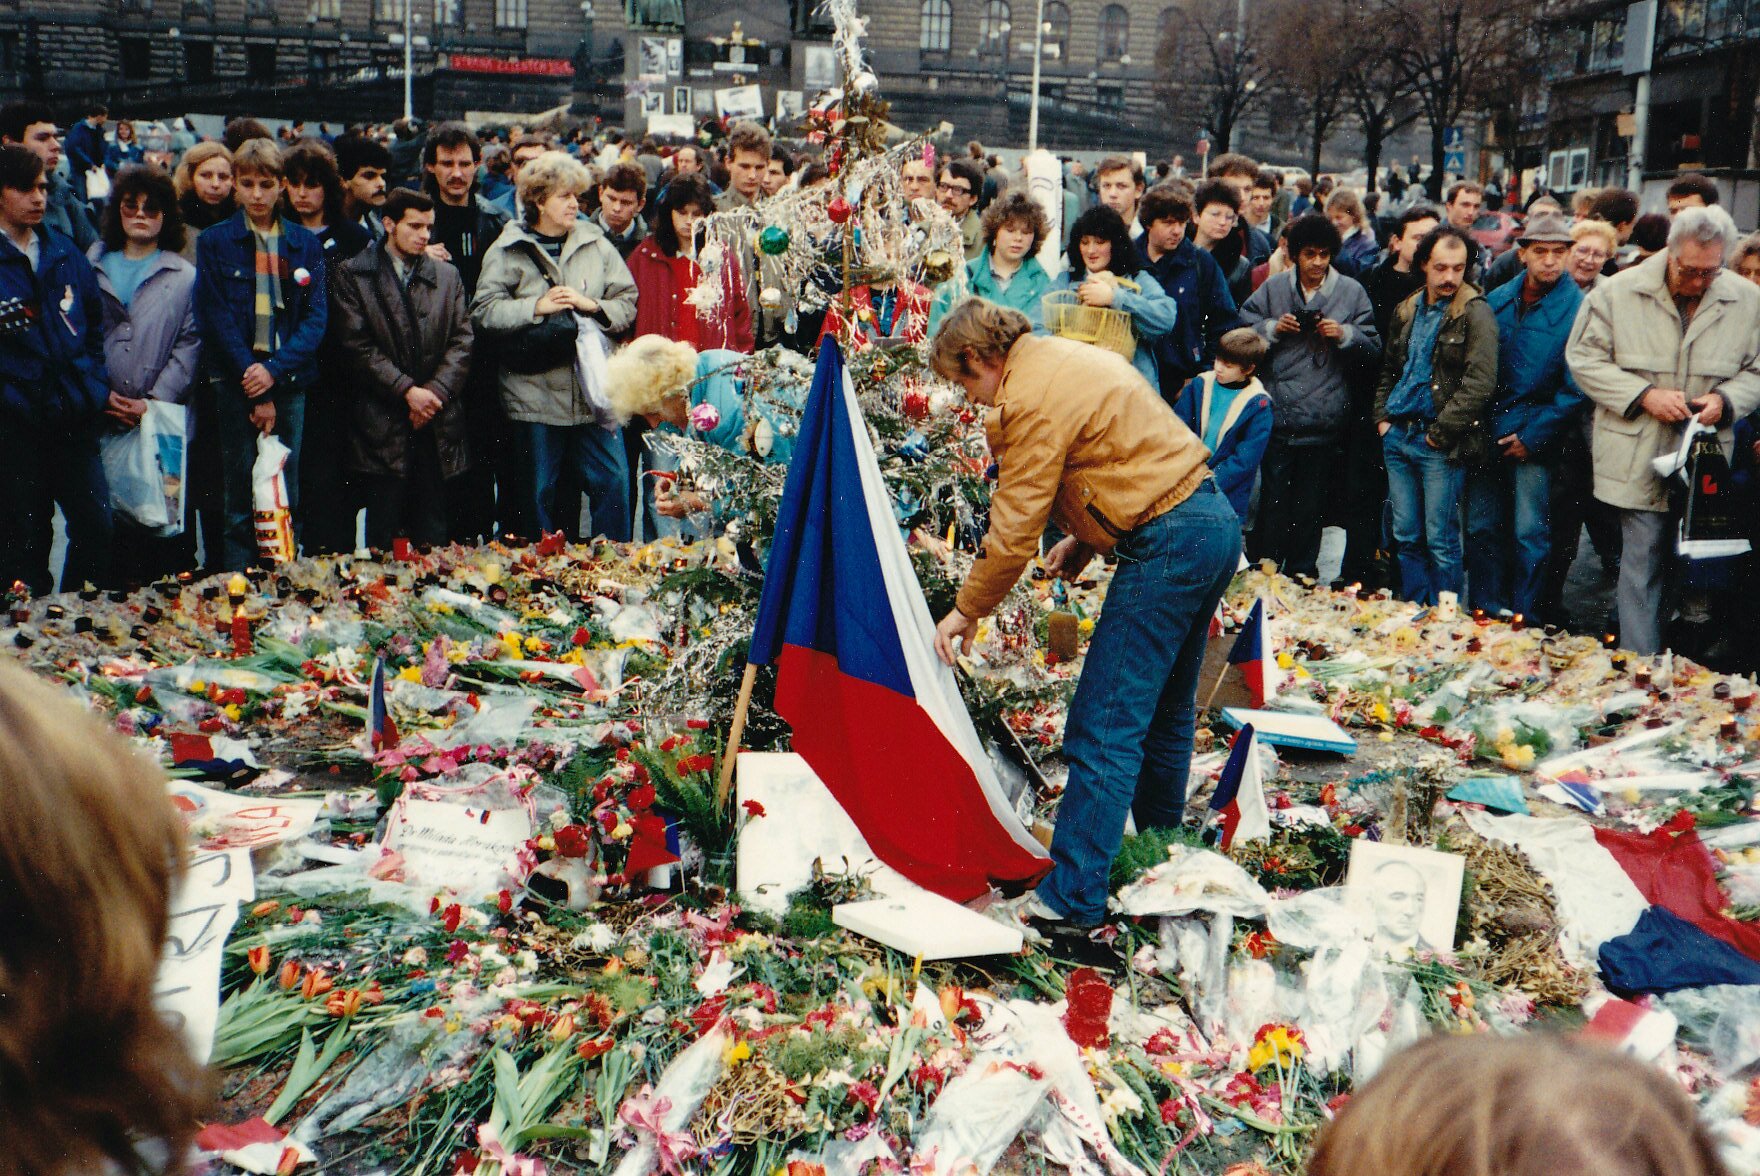 Zdjęcie. Na ziemi leżą stosy kwiatów. Po środku stoi mężczyzna i układa kwiaty obok czechosłowackiej flagi. Wokół stoją ludzie w jesiennych ubraniach. W tle kamienice i domy.